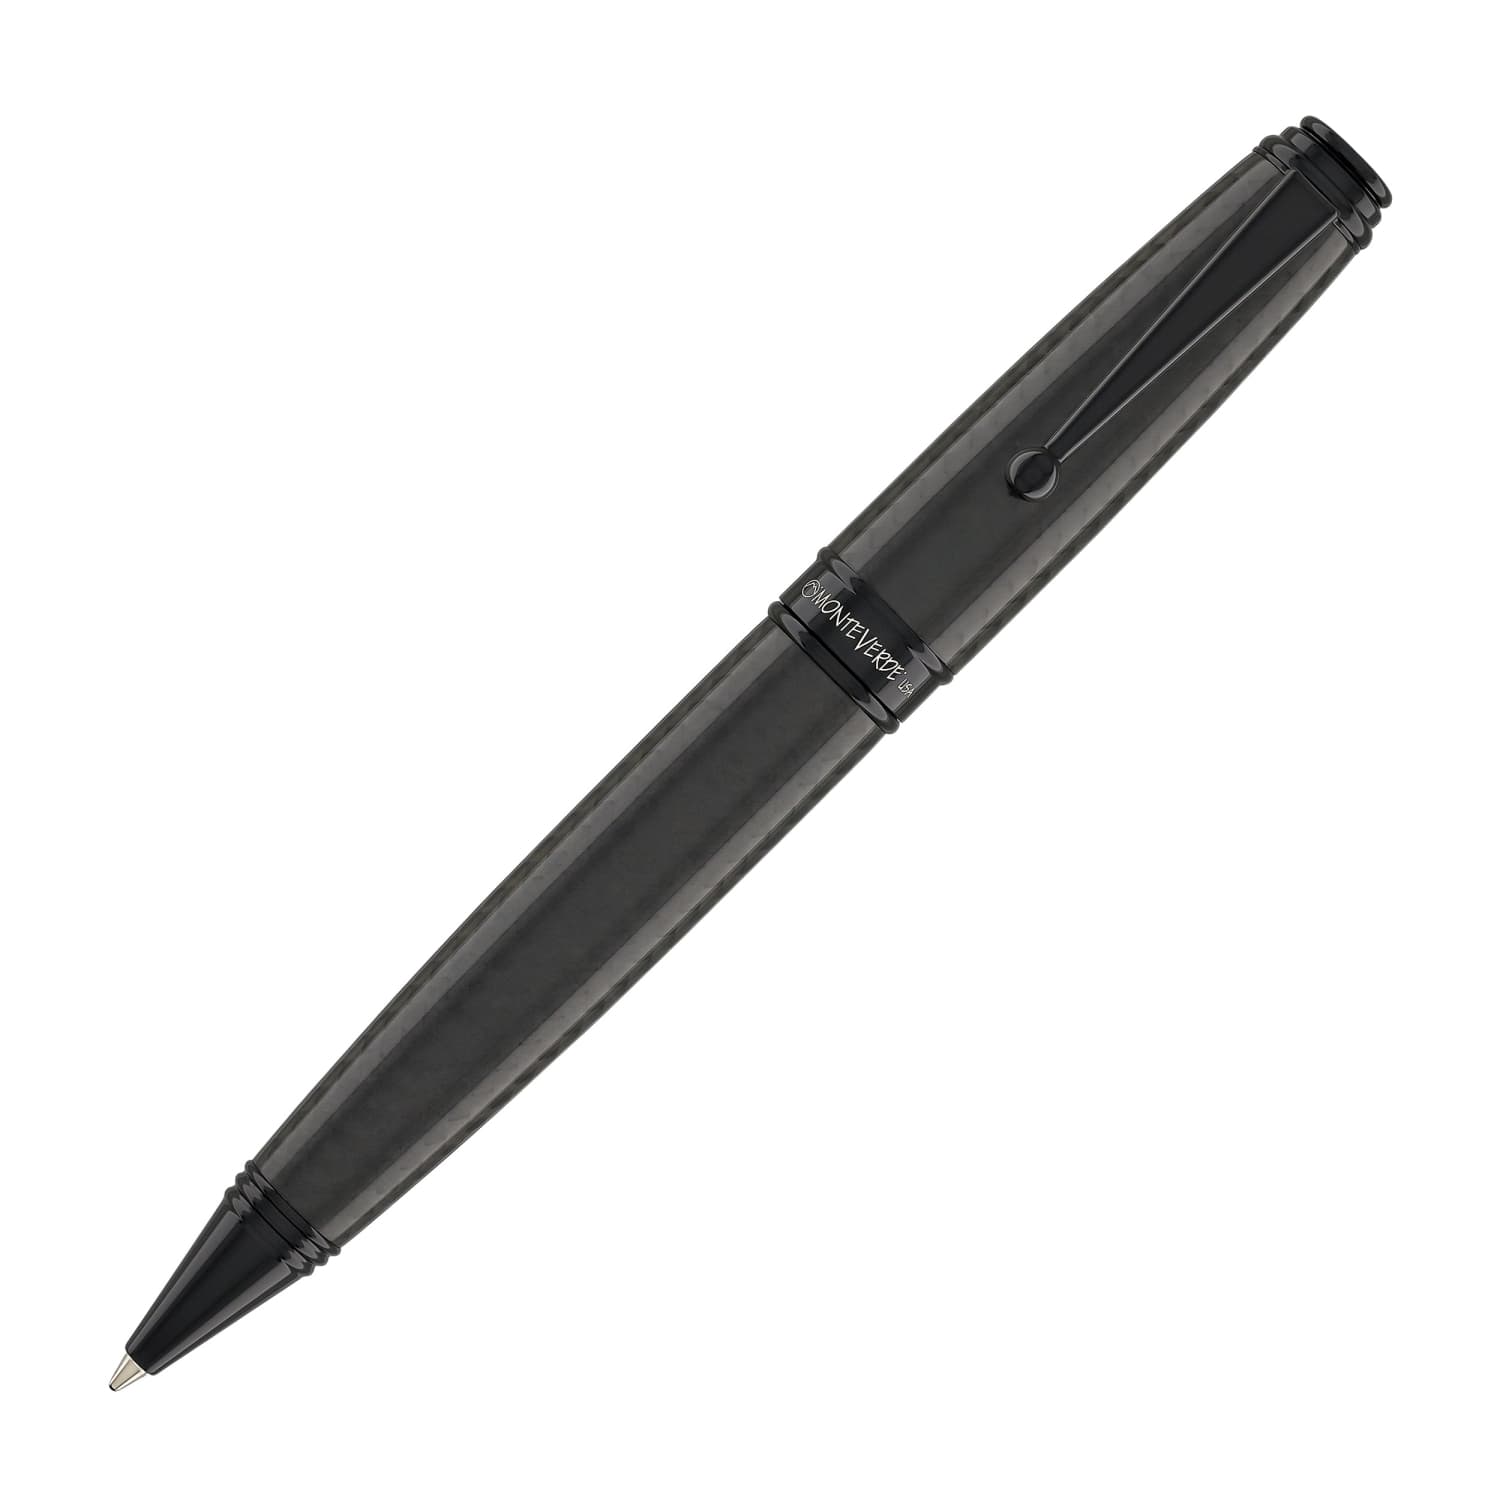 http://goldspot.com/cdn/shop/files/monteverde-invincia-deluxe-ballpoint-pen-in-black-carbon-fiber-731.jpg?v=1685434677